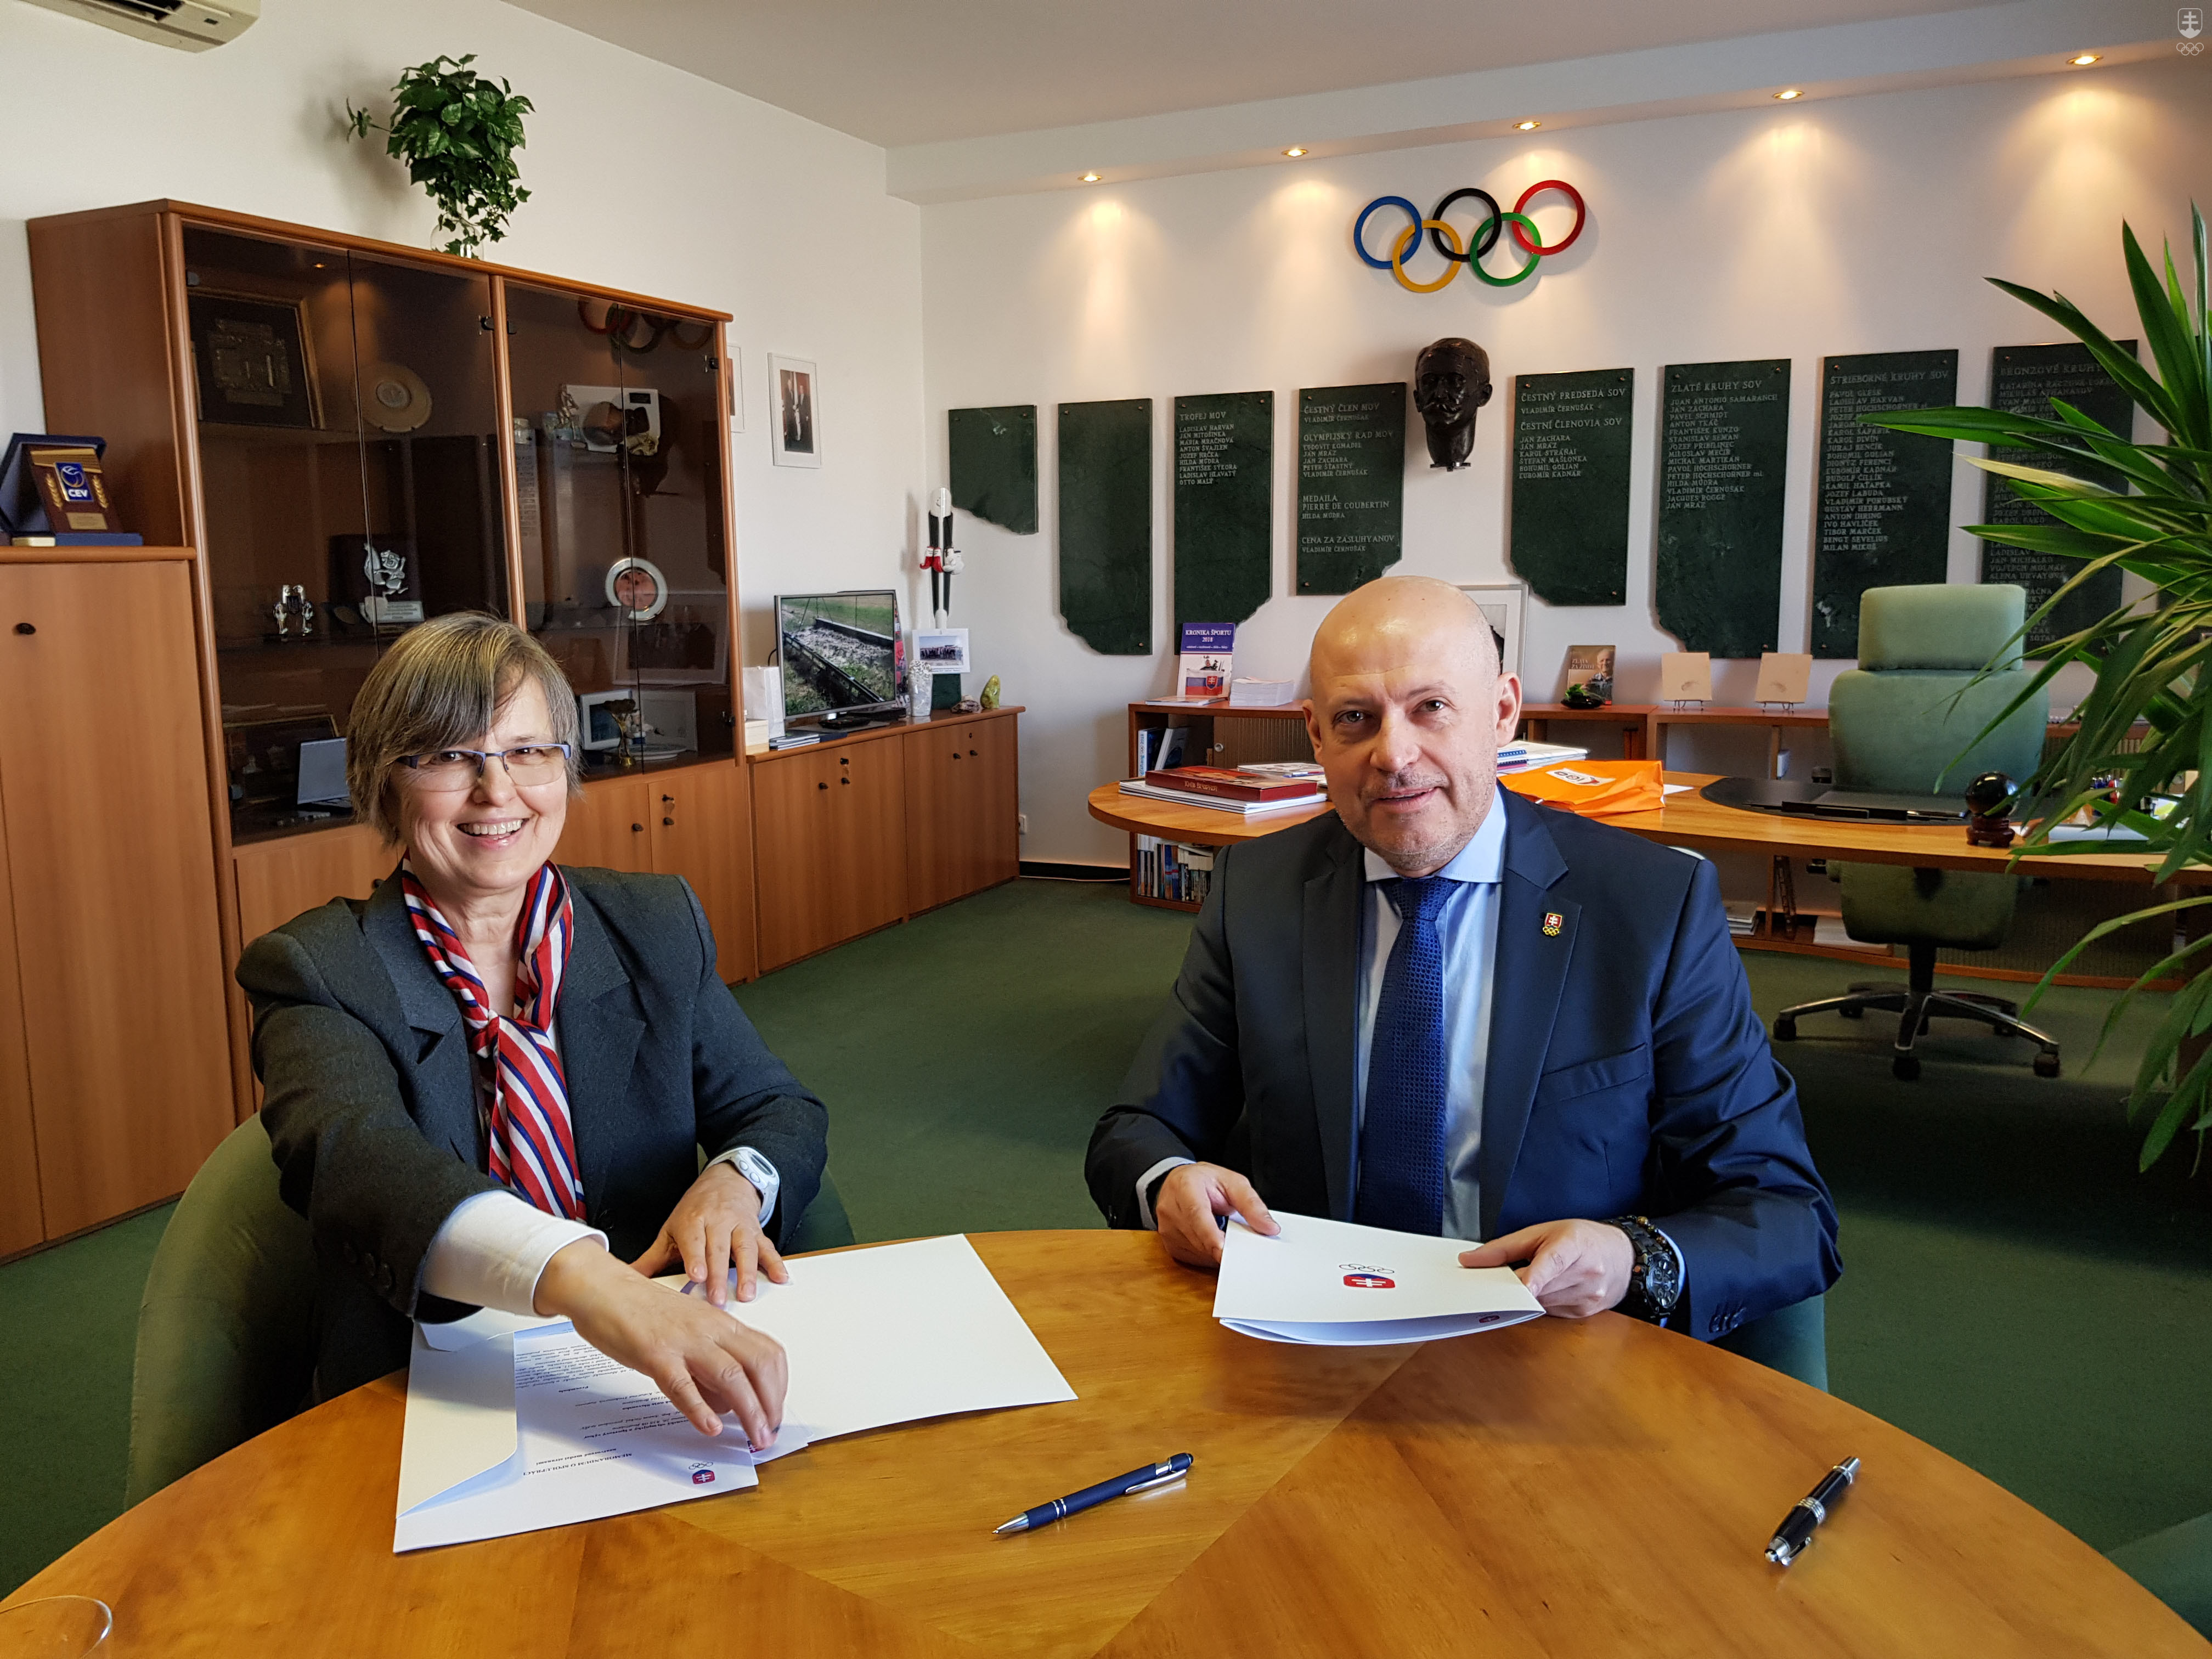 Podpísanie Memoranda o vzájomnej spolupráci so Sokolskou úniou Slovenska